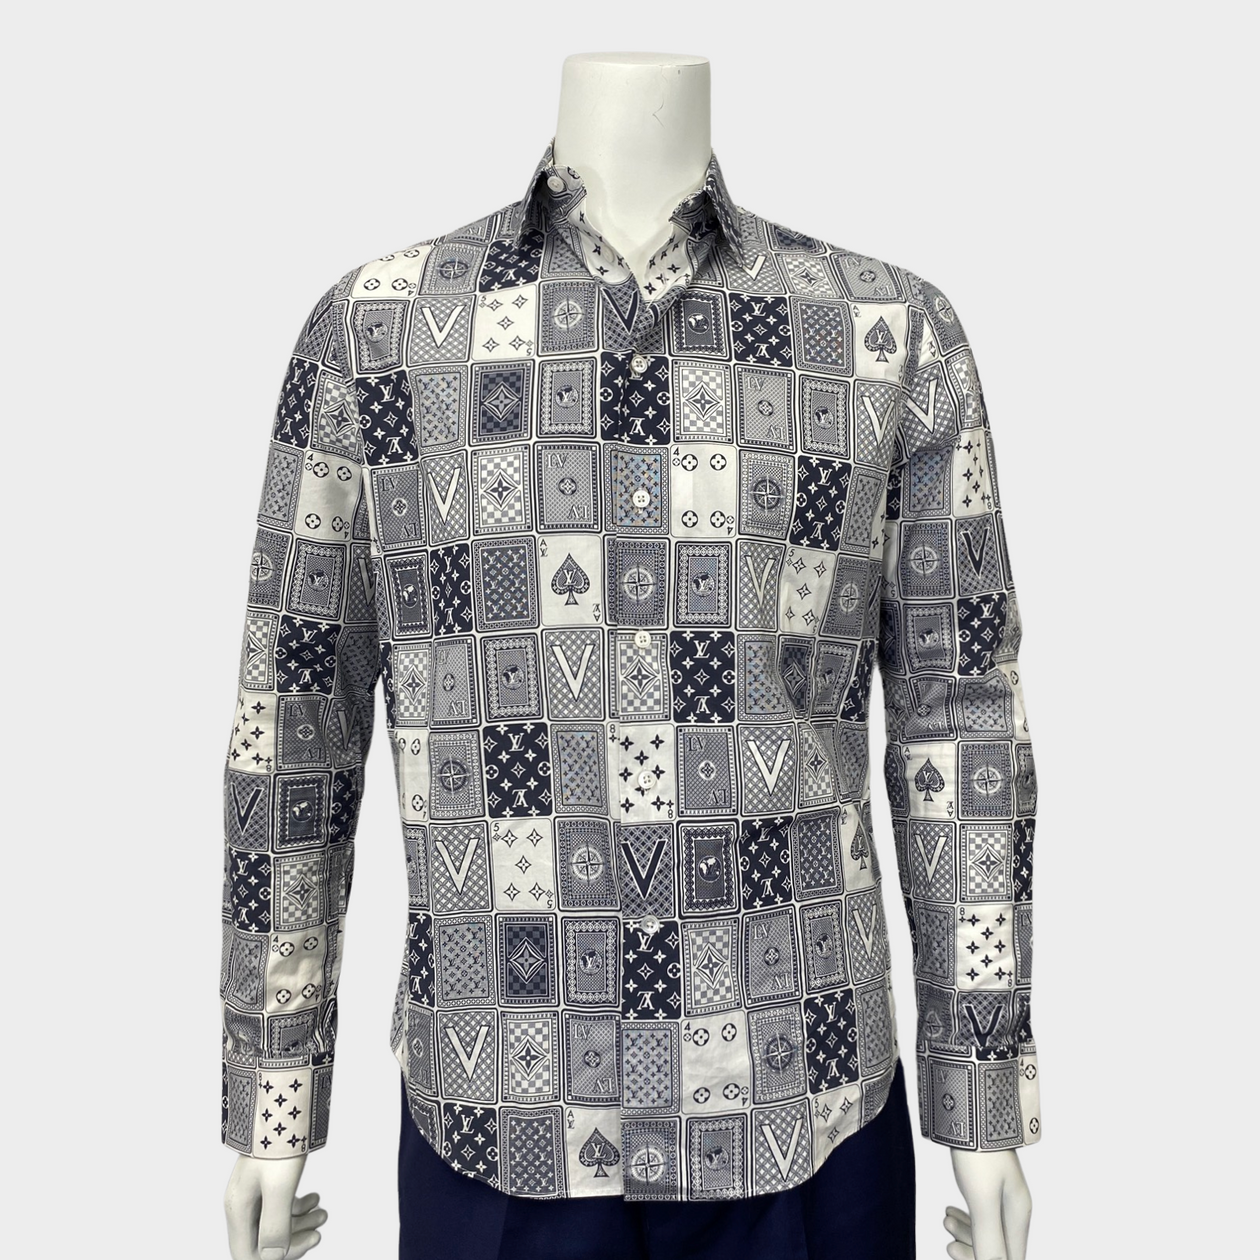 Louis Vuitton - Authenticated T-Shirt - Cotton Blue for Men, Never Worn